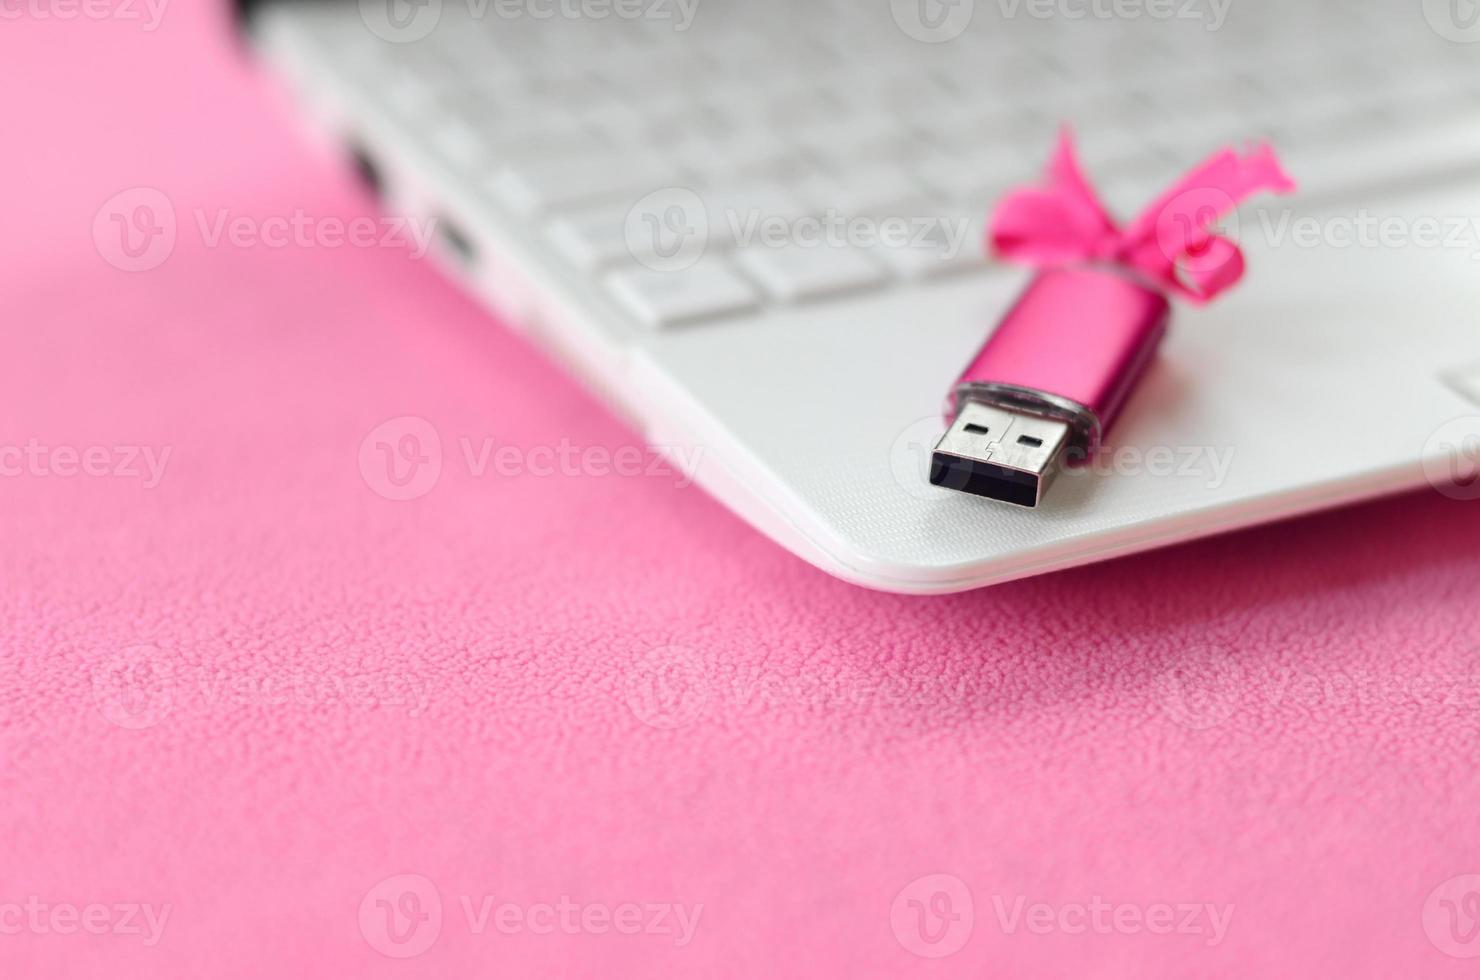 carte mémoire flash usb rose brillant avec un arc rose se trouve sur une couverture de tissu polaire rose clair doux et poilu à côté d'un ordinateur portable blanc. conception de cadeau féminin classique pour une carte mémoire photo